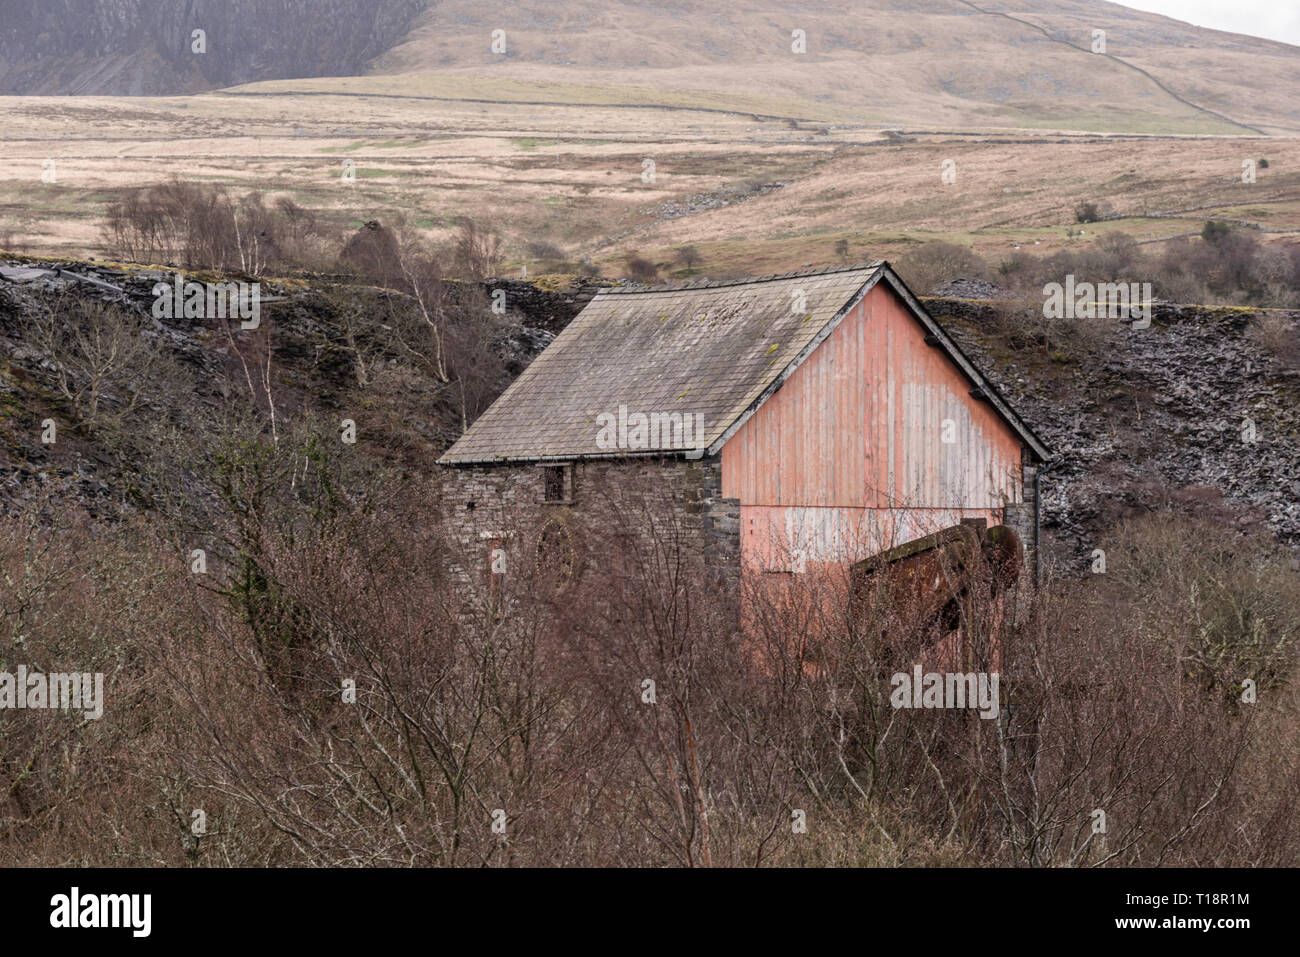 Abandoned Cornish Beam Engine at Dorothea Slate Quarry, Nantlle Valley, Wales, Gwynedd, UK Stock Photo